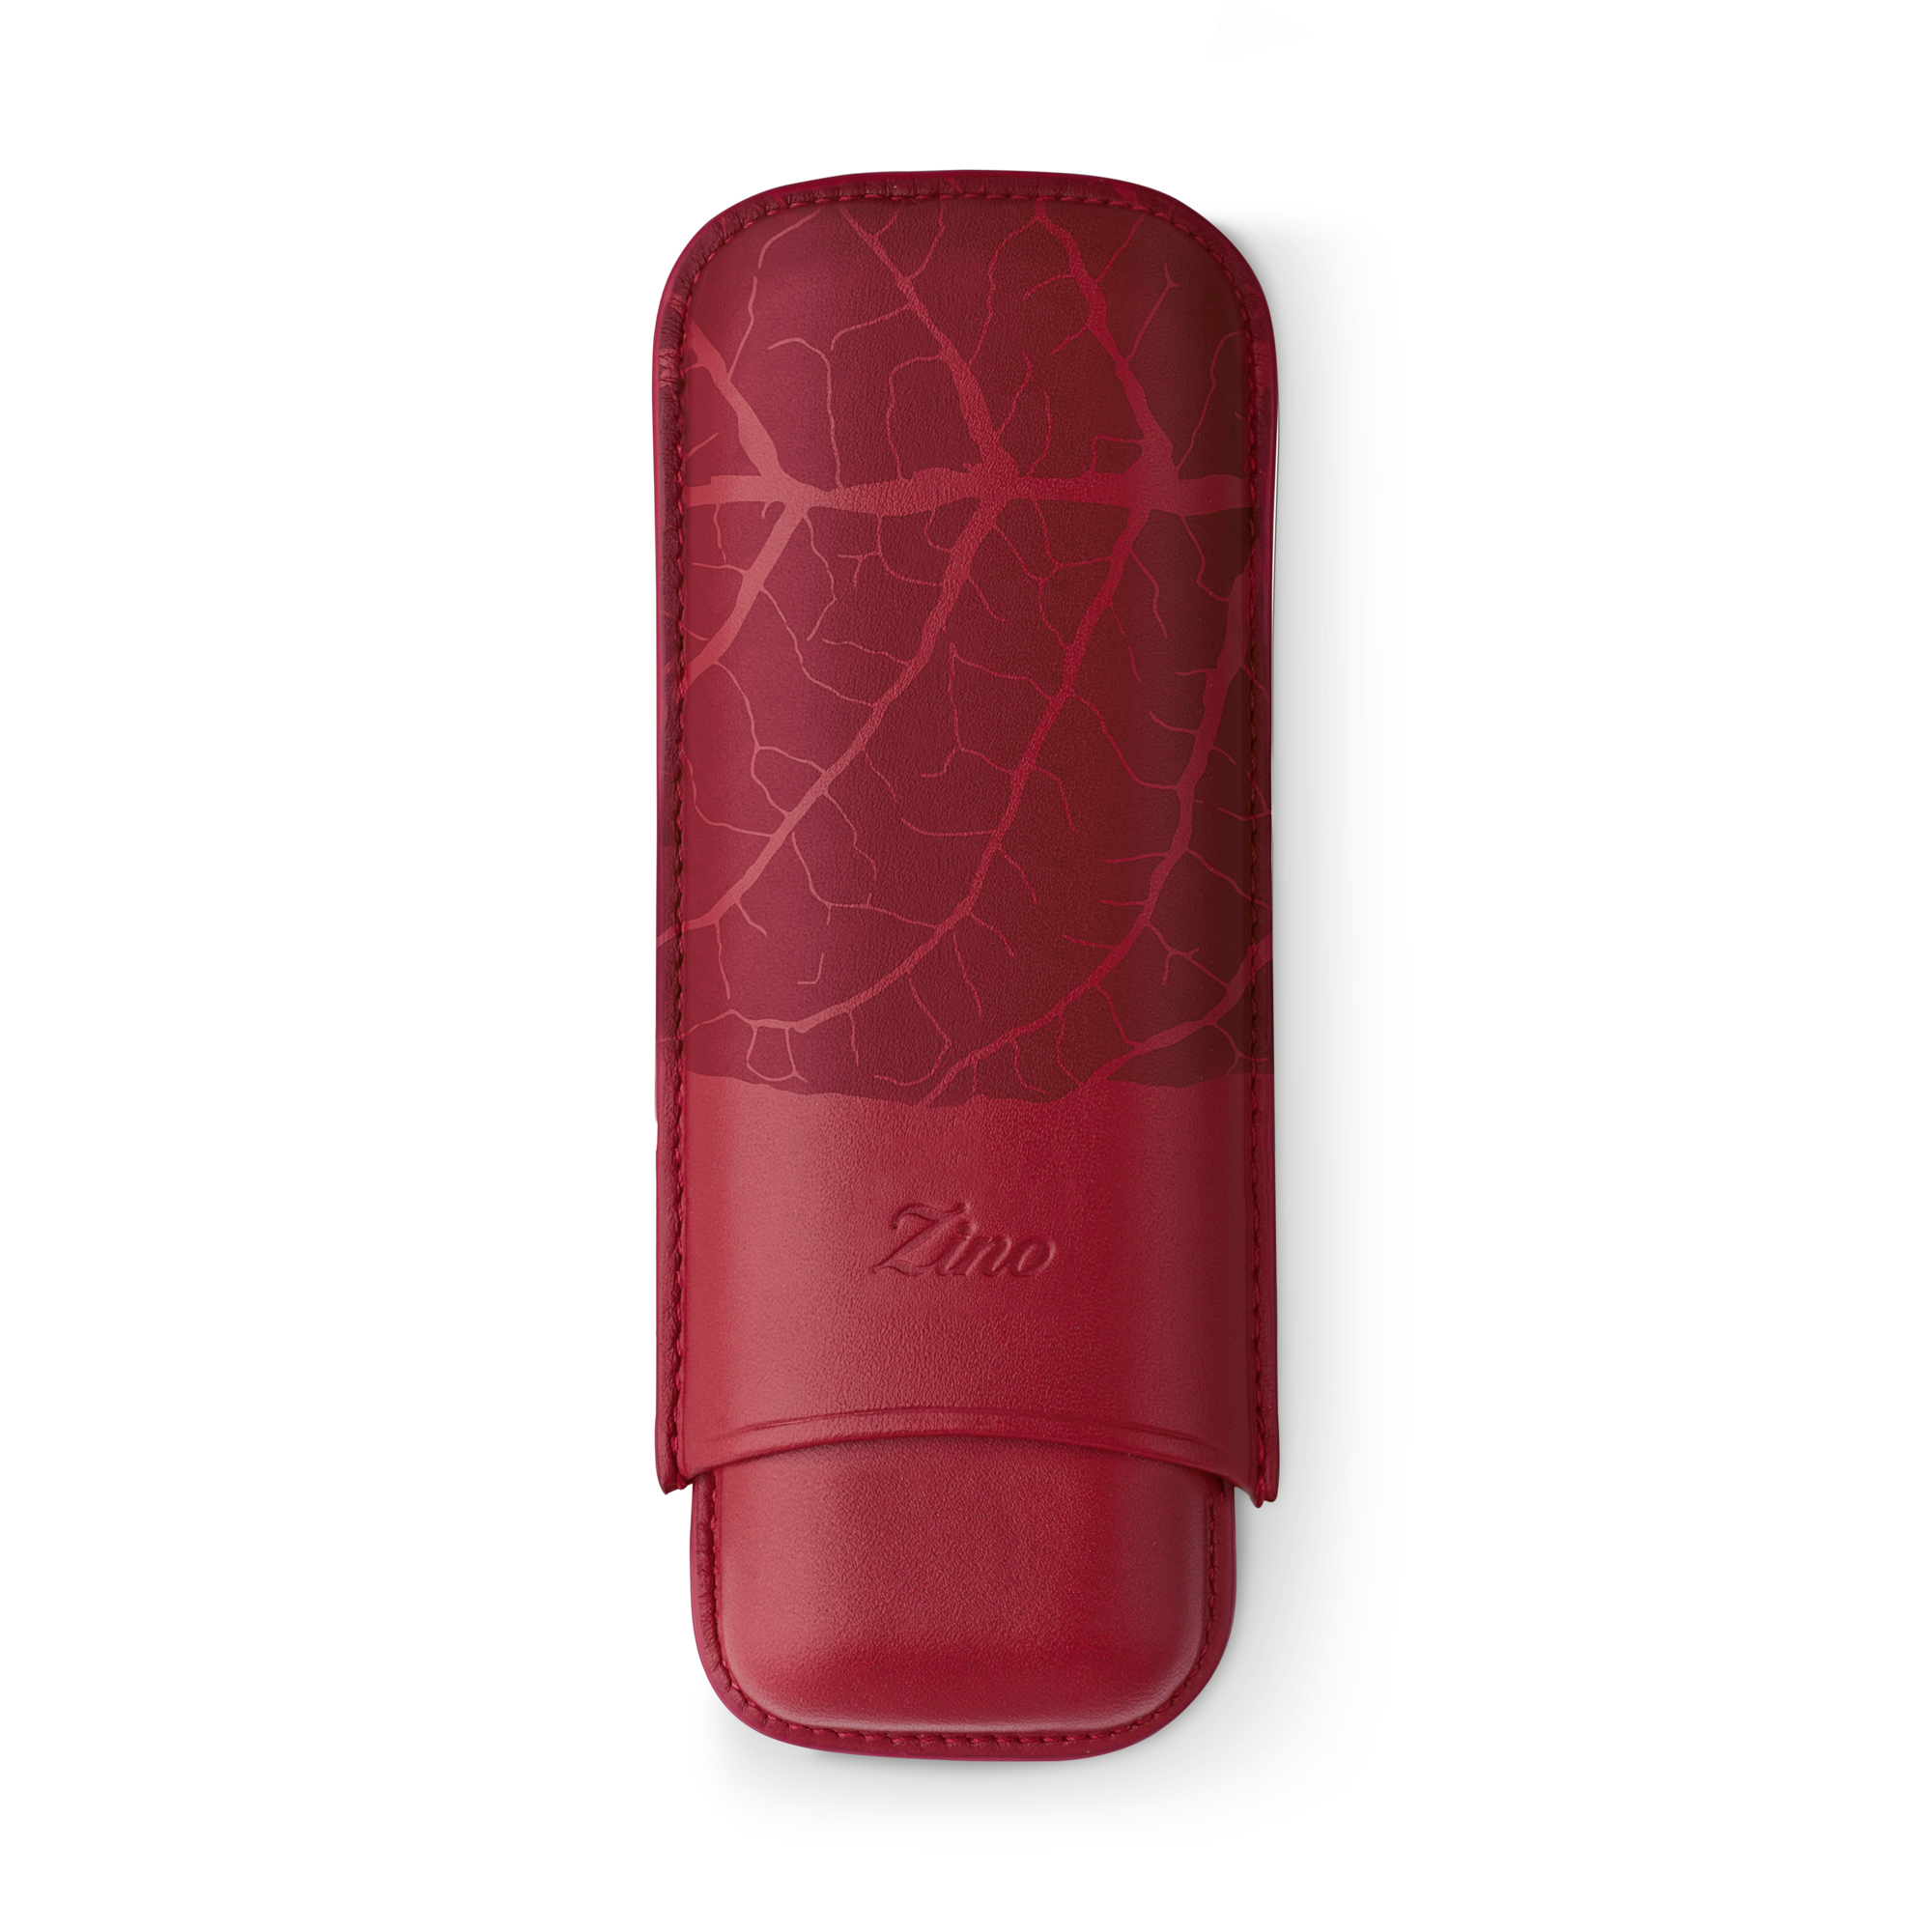 Zino Zigarrenetui Graphic Leaf  XL-2 Leder rot